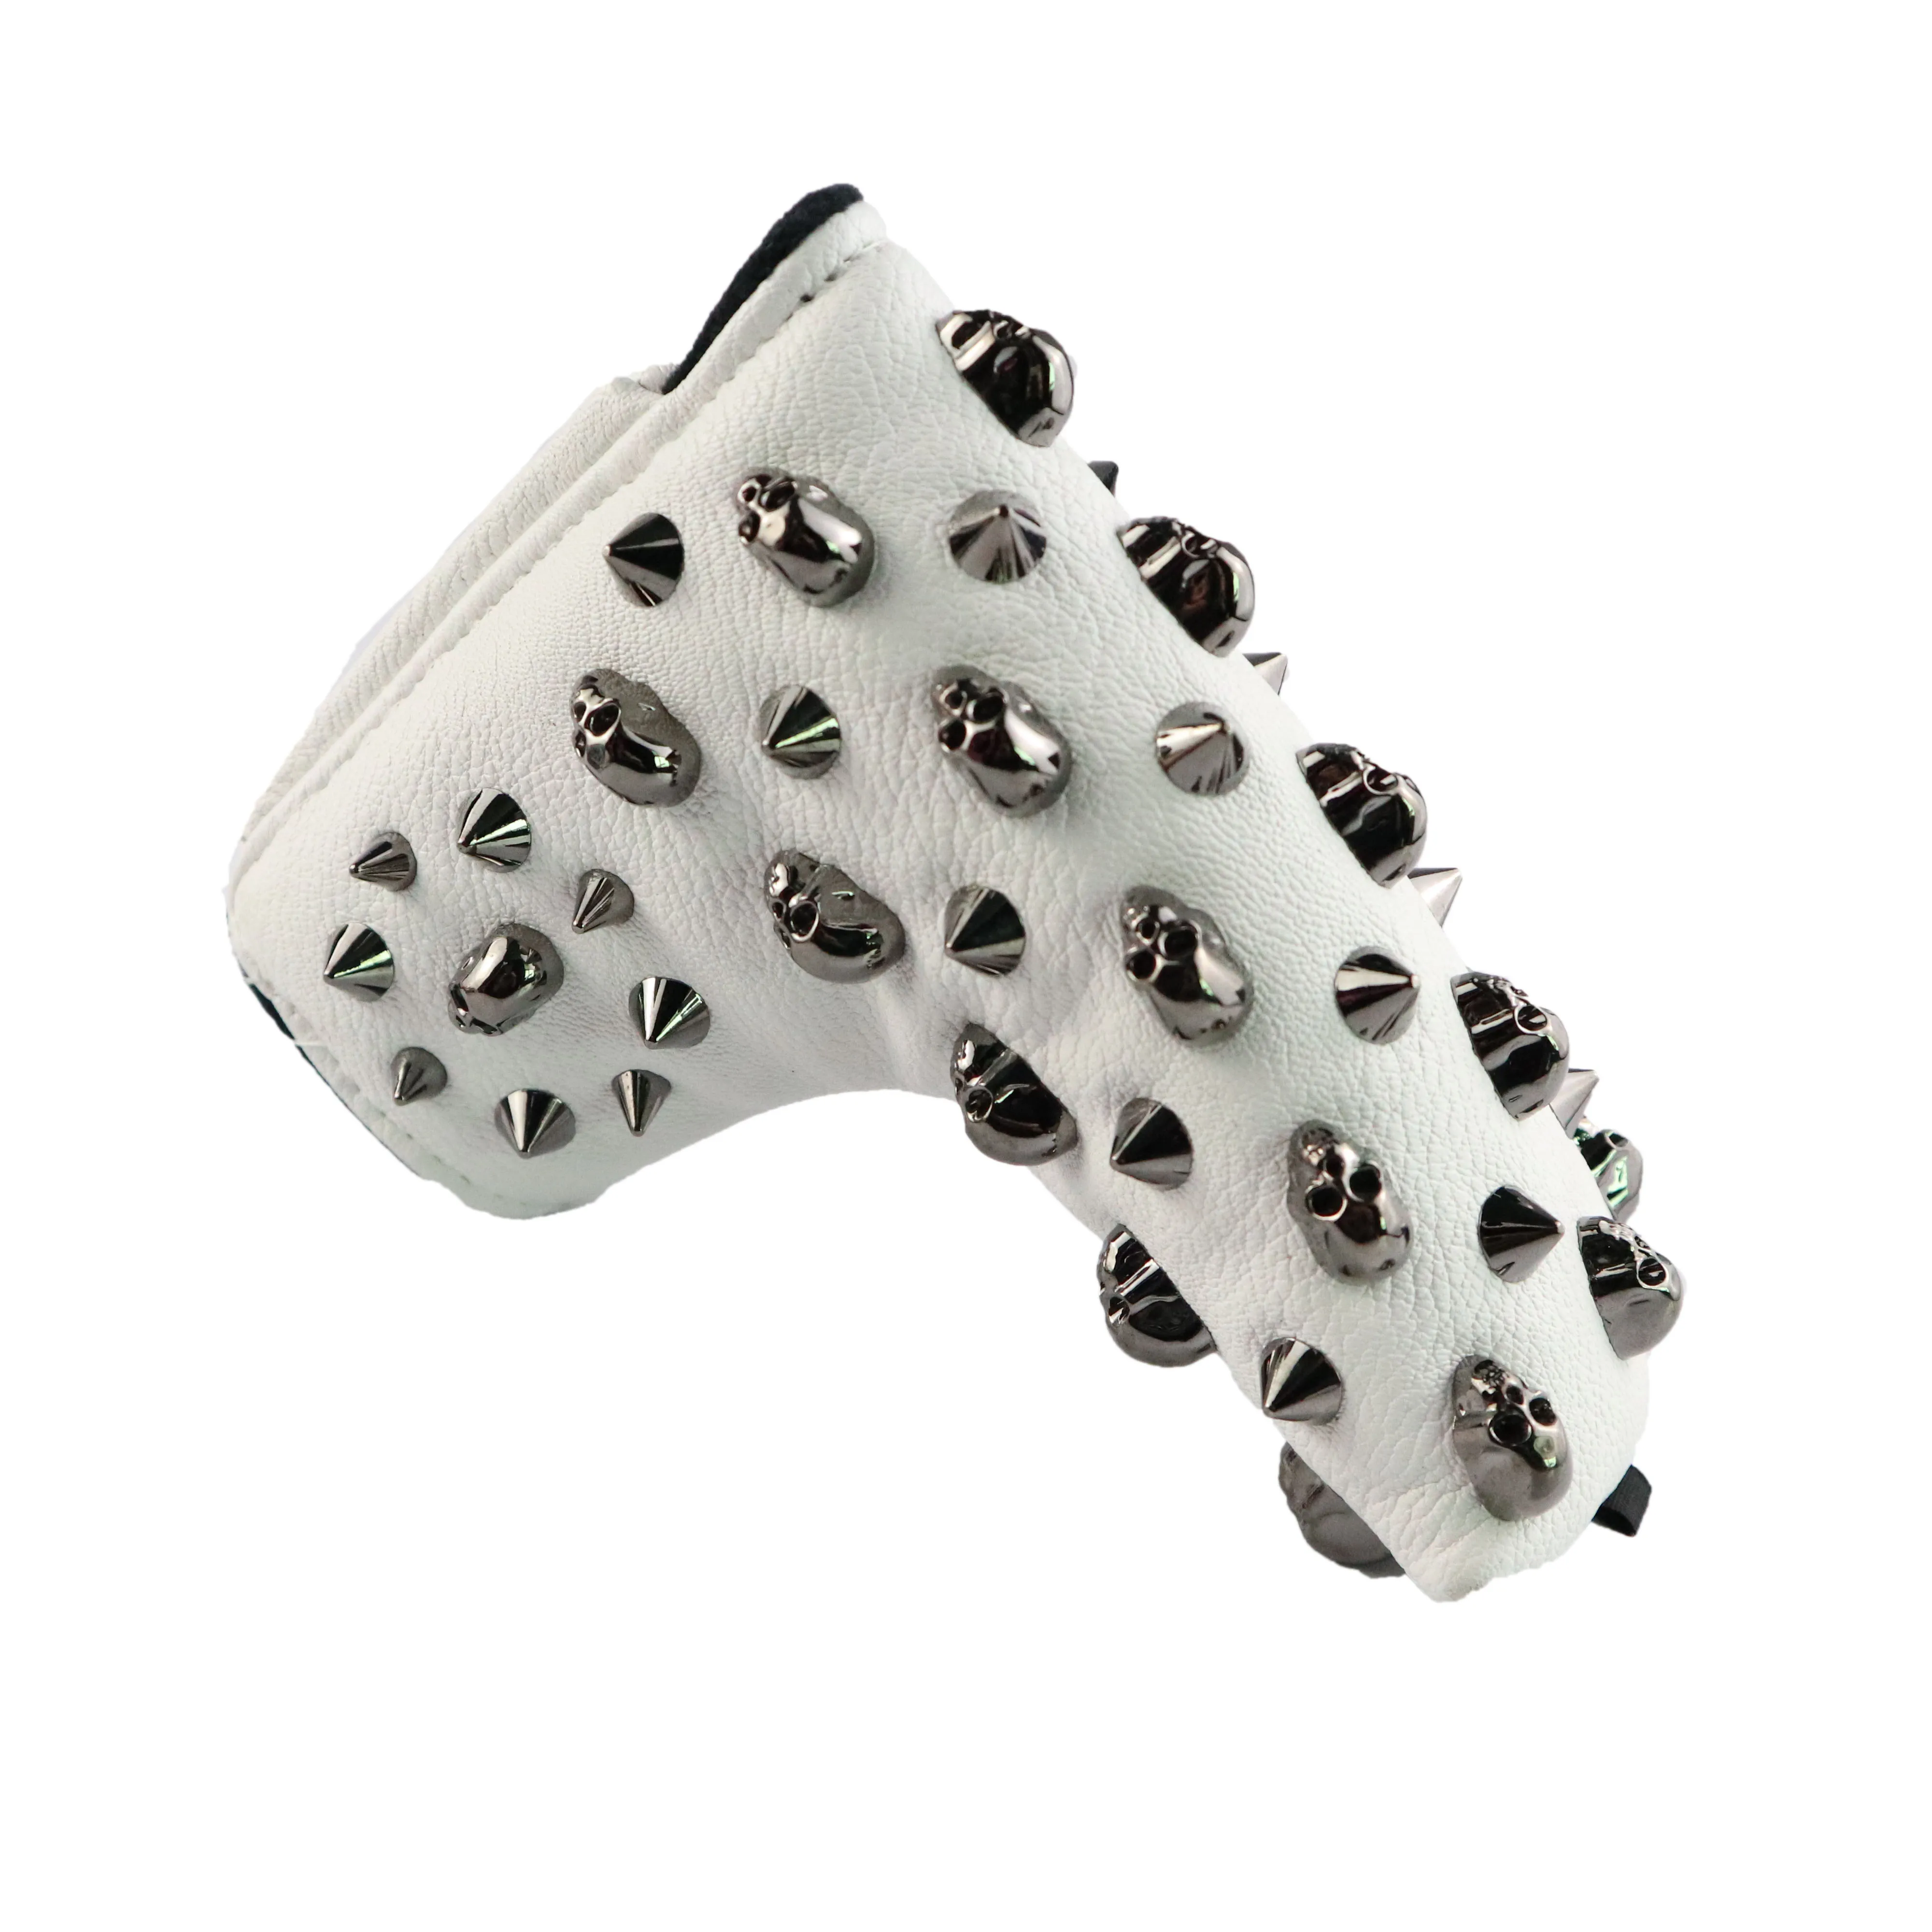 NRC головки для гольфа Чехлы для#1 водителя#3#5 Фарватера Вудс клубов головные уборы и взаимозаменяемые No. Tag-Черный череп заклепки - Color: White putter